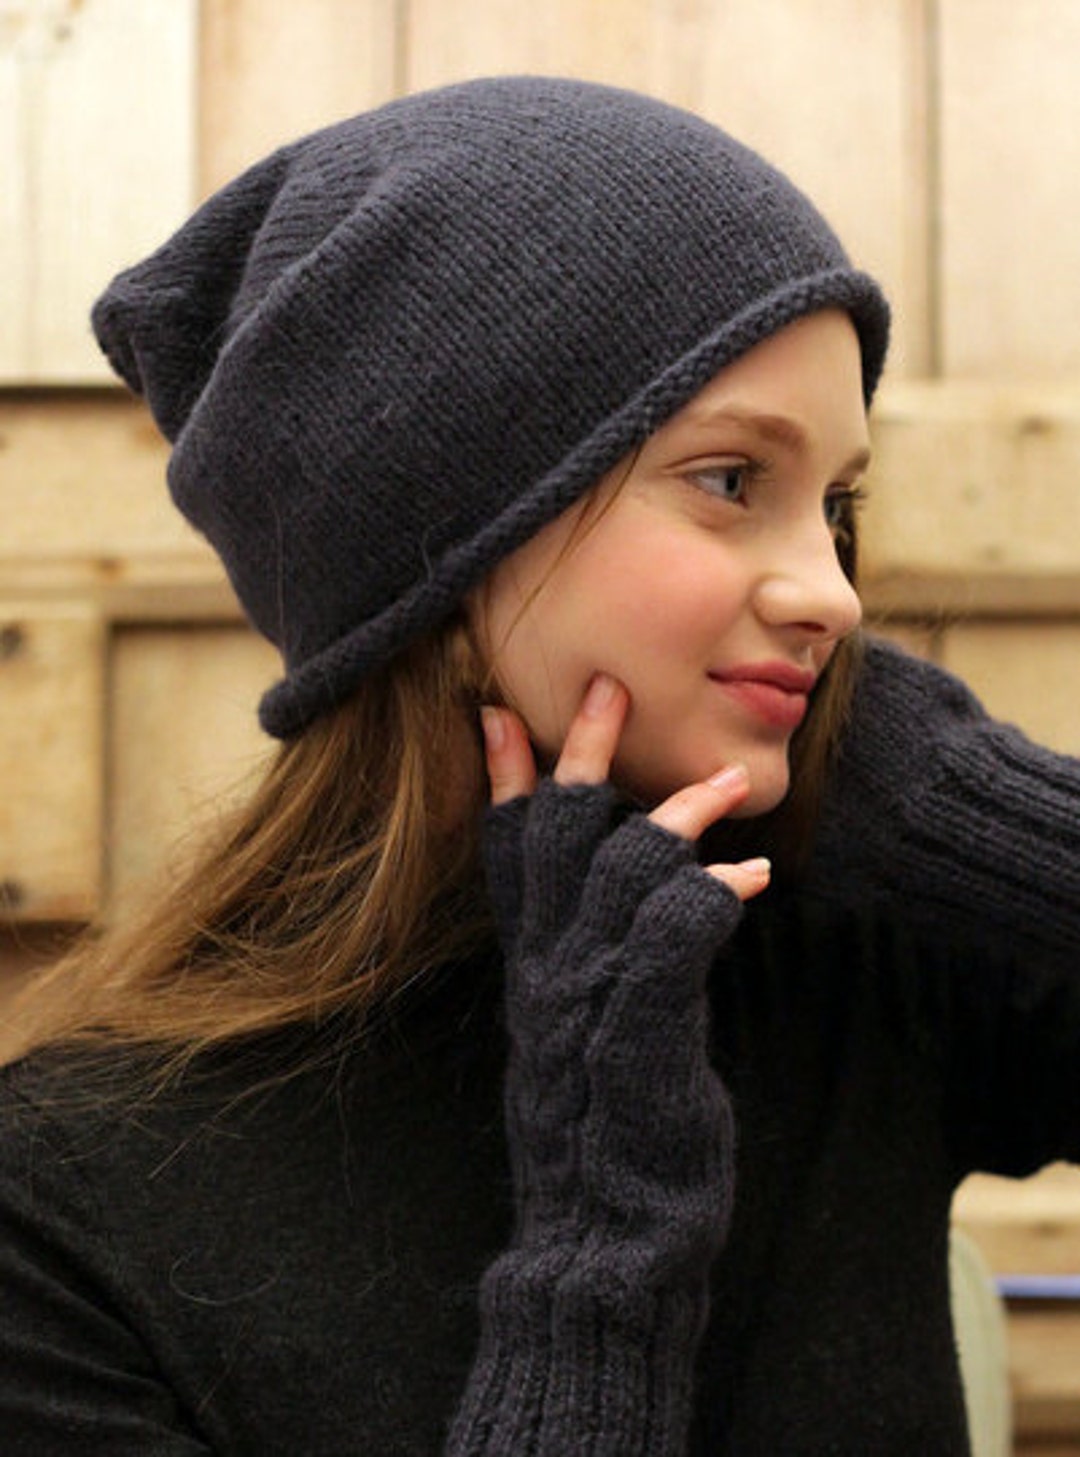 Buy Winter Woolen Leggings for Women & Girls, Black, Pink, Light Grey,  Beige, Purple (Size: S) at